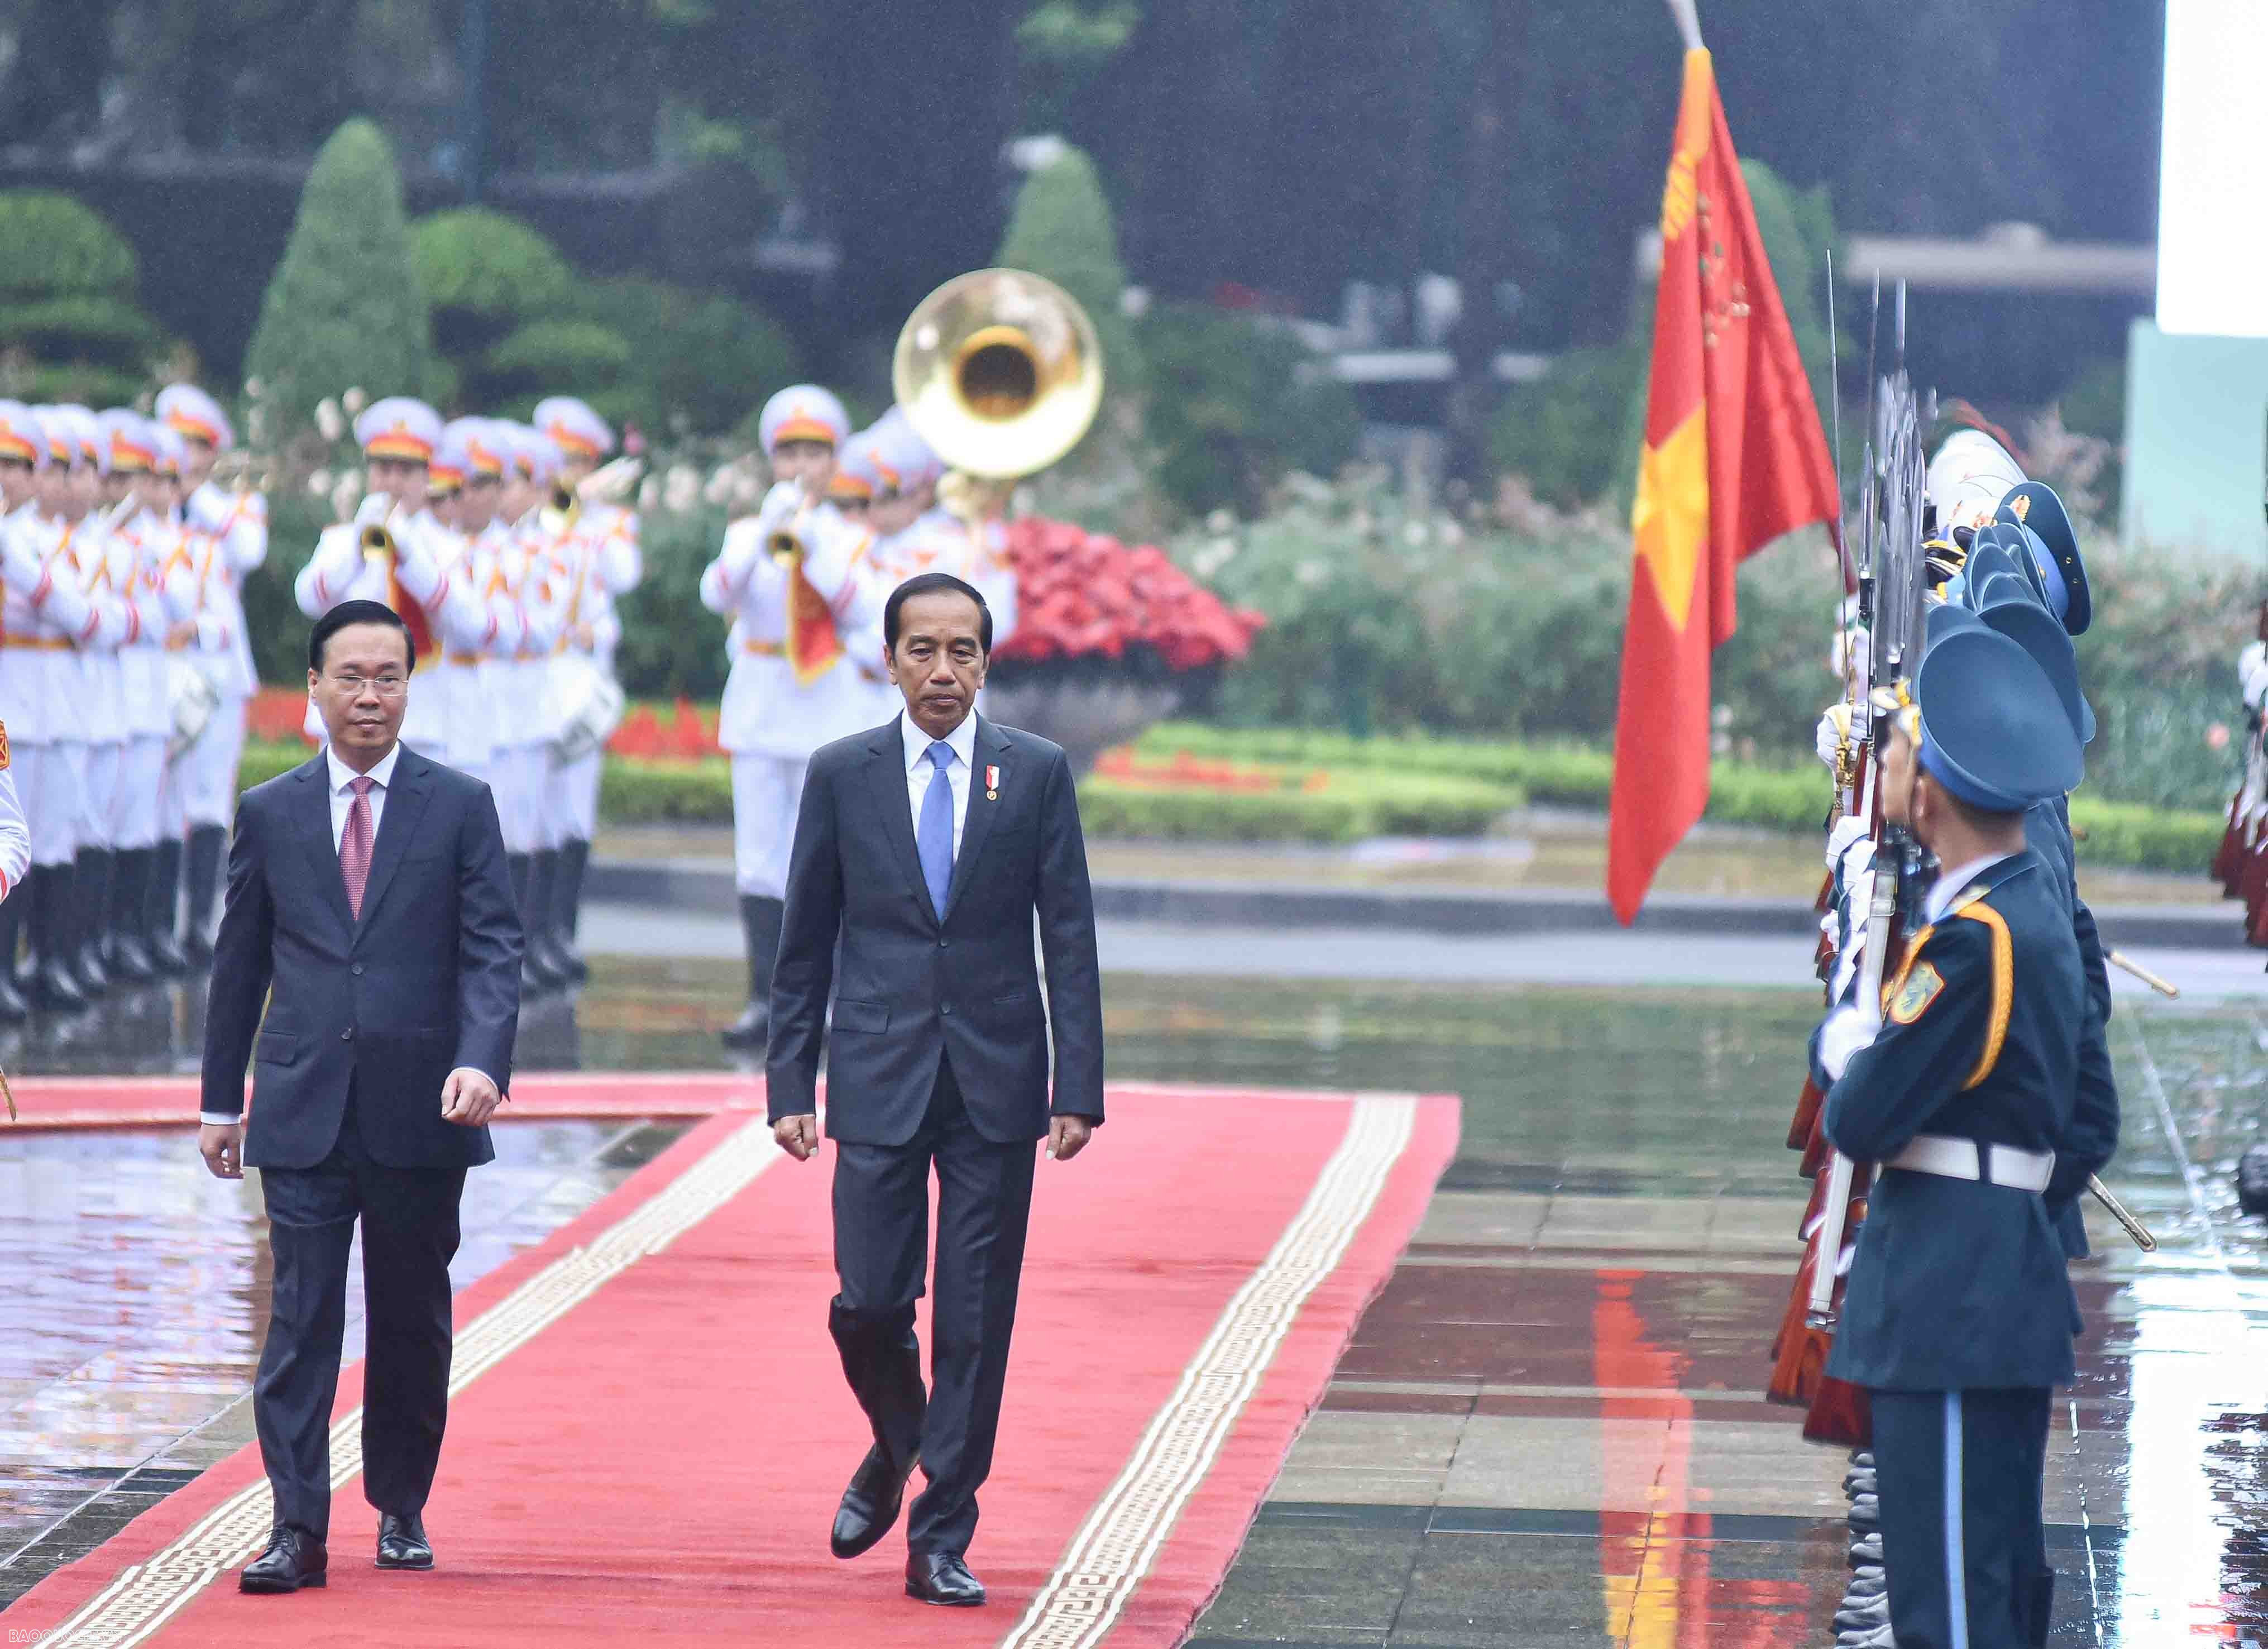 Tổng thống Joko Widodo cũng sẽ có các cuộc hội kiến lãnh đạo cấp cao Việt Nam. Trong chuyến thăm, ông Joko Widodo dự kiến sẽ có một số hoạt động khác cùng lãnh đạo Việt Nam như cùng Chủ tịch nước Võ Văn Thưởng dự chương trình biểu diễn võ thuật, cùng Thủ 